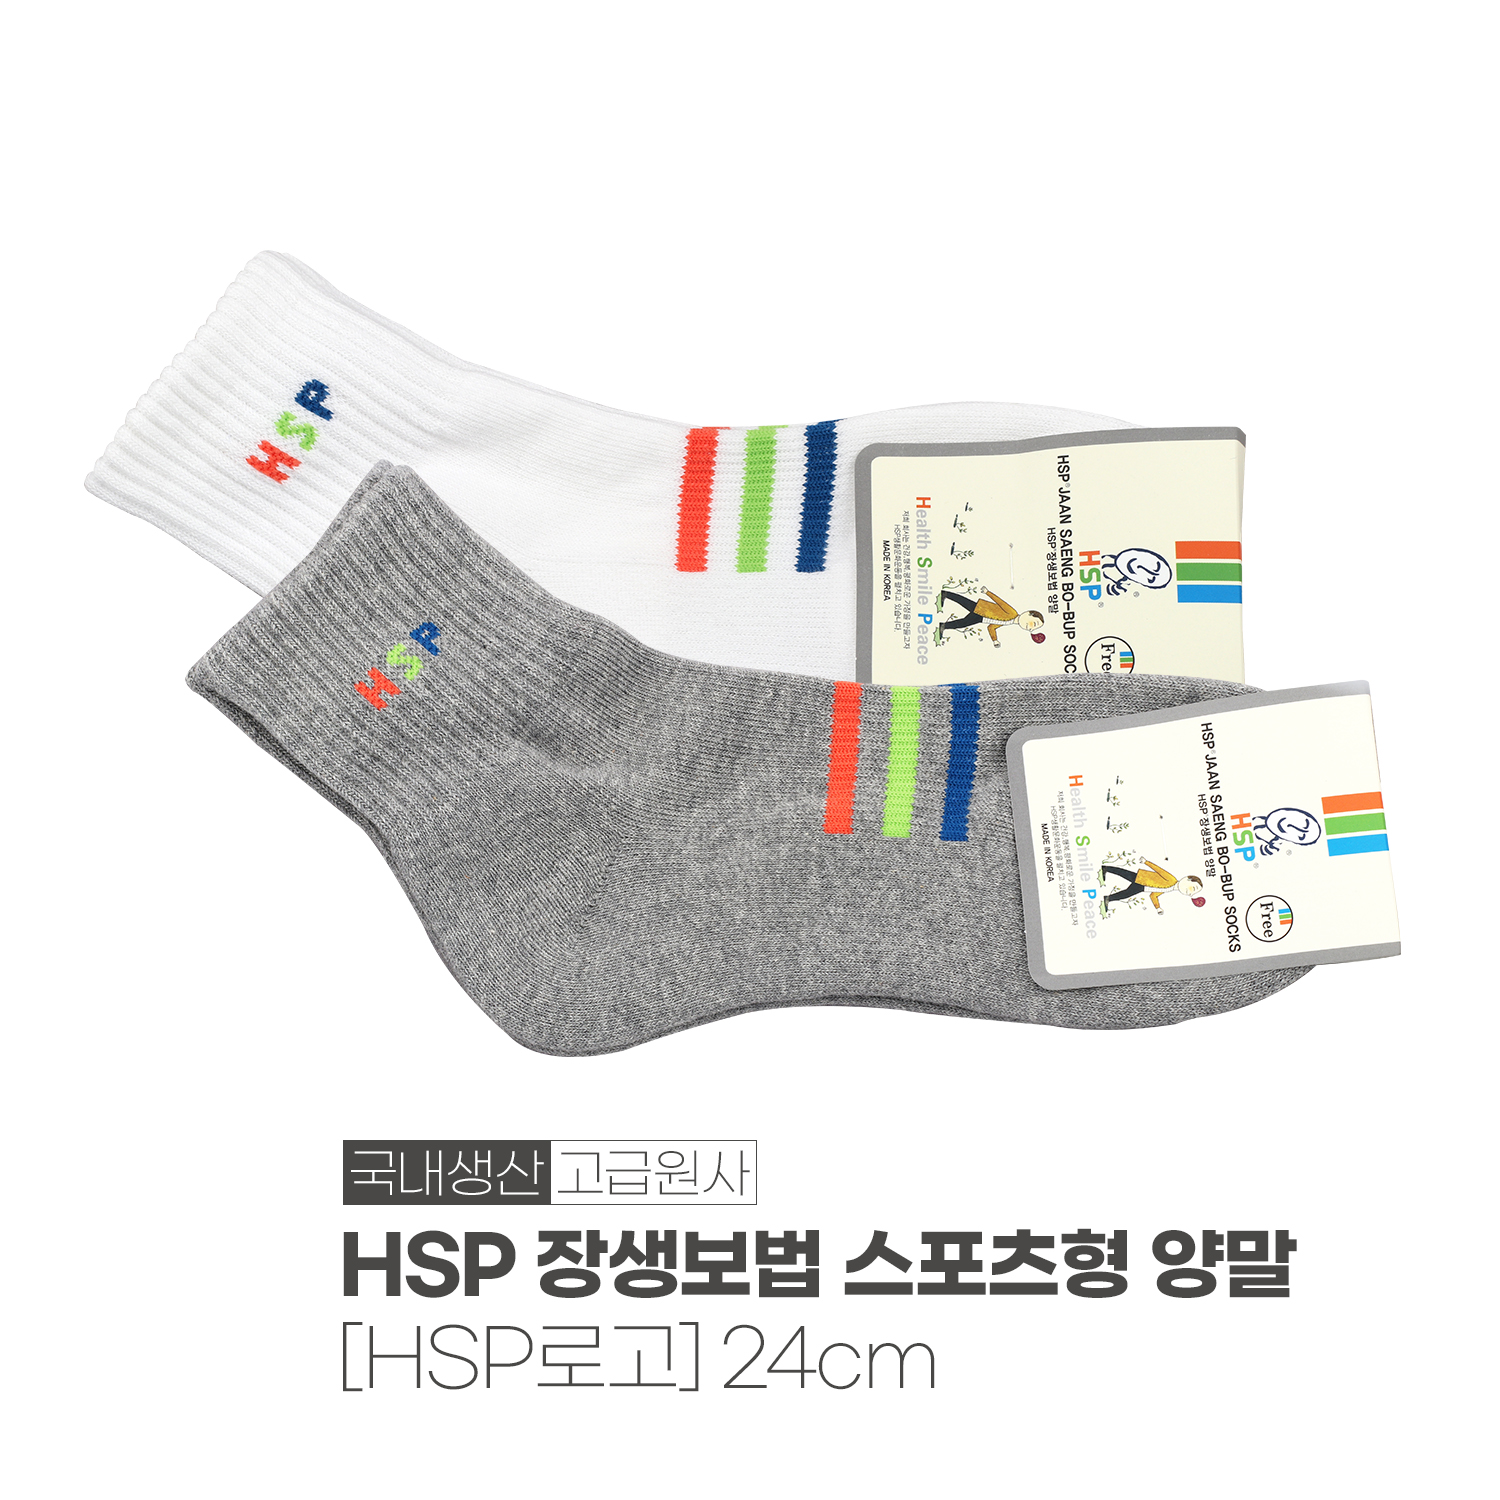 HSP 장생보법 스포츠형 양말 / HSP로고 (화이트/그레이)_1